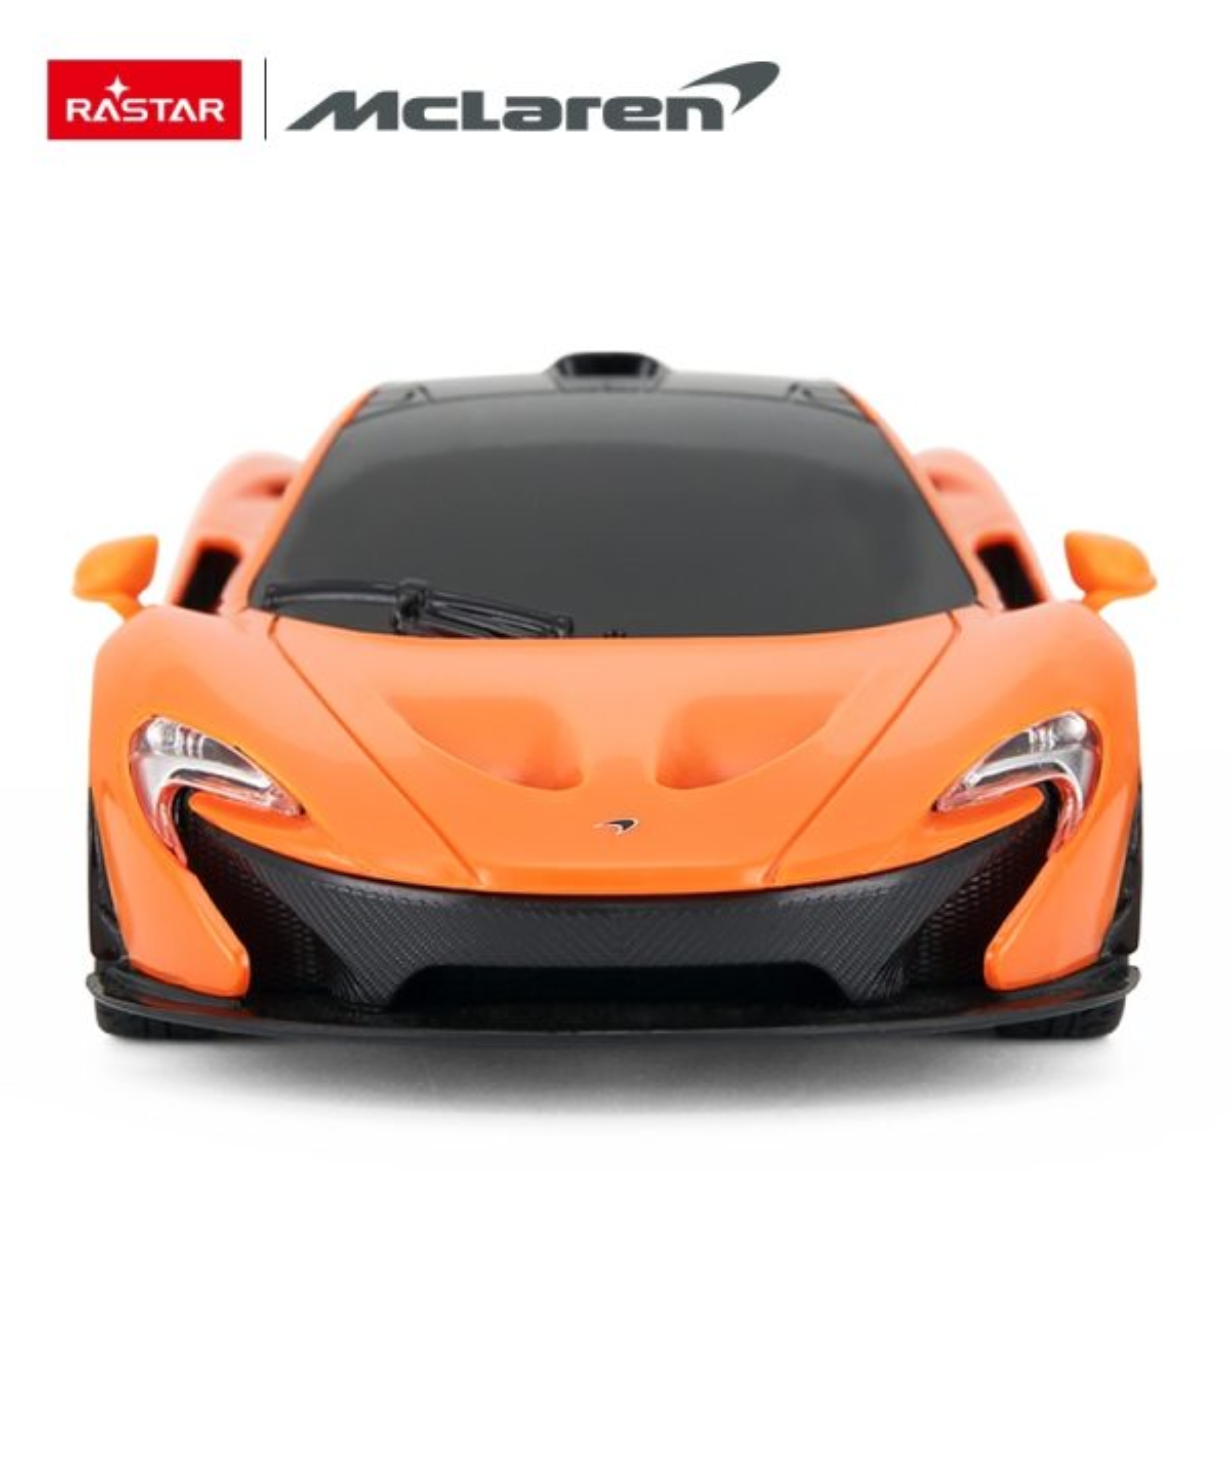 Rastar McLaren P1 Car r/c